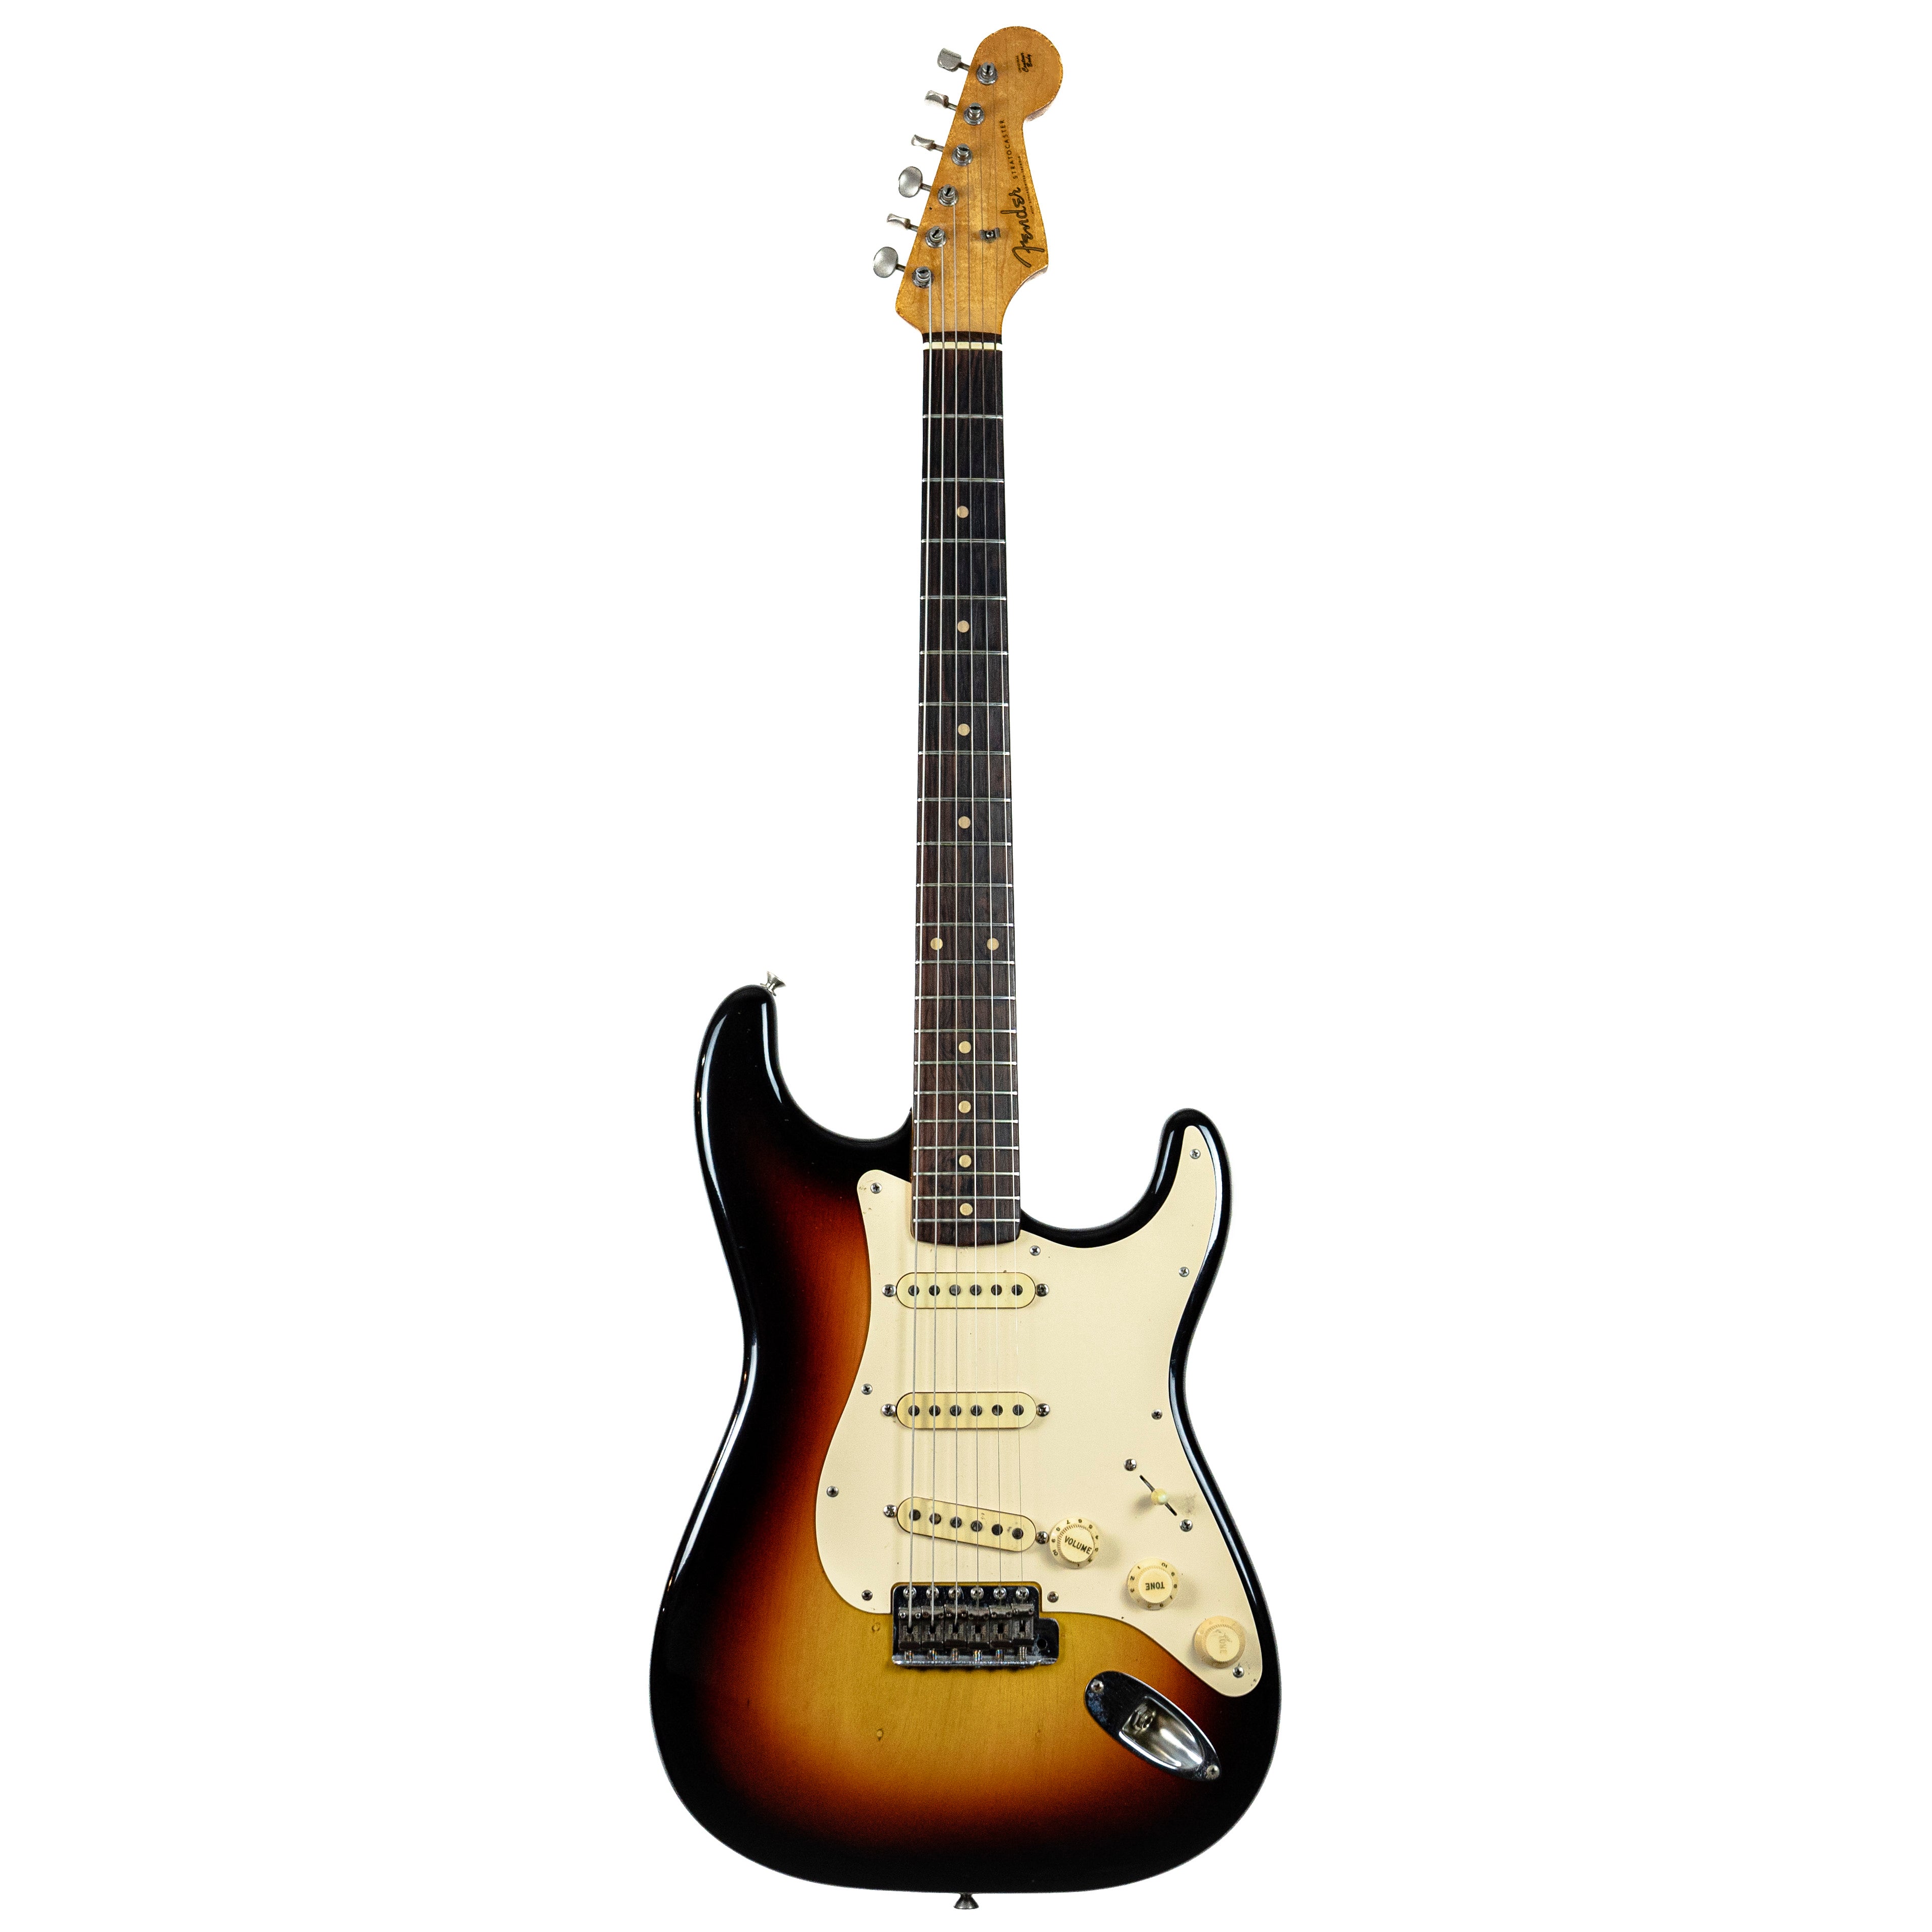 Fender Stratocaster 1959 – True Vintage Guitar